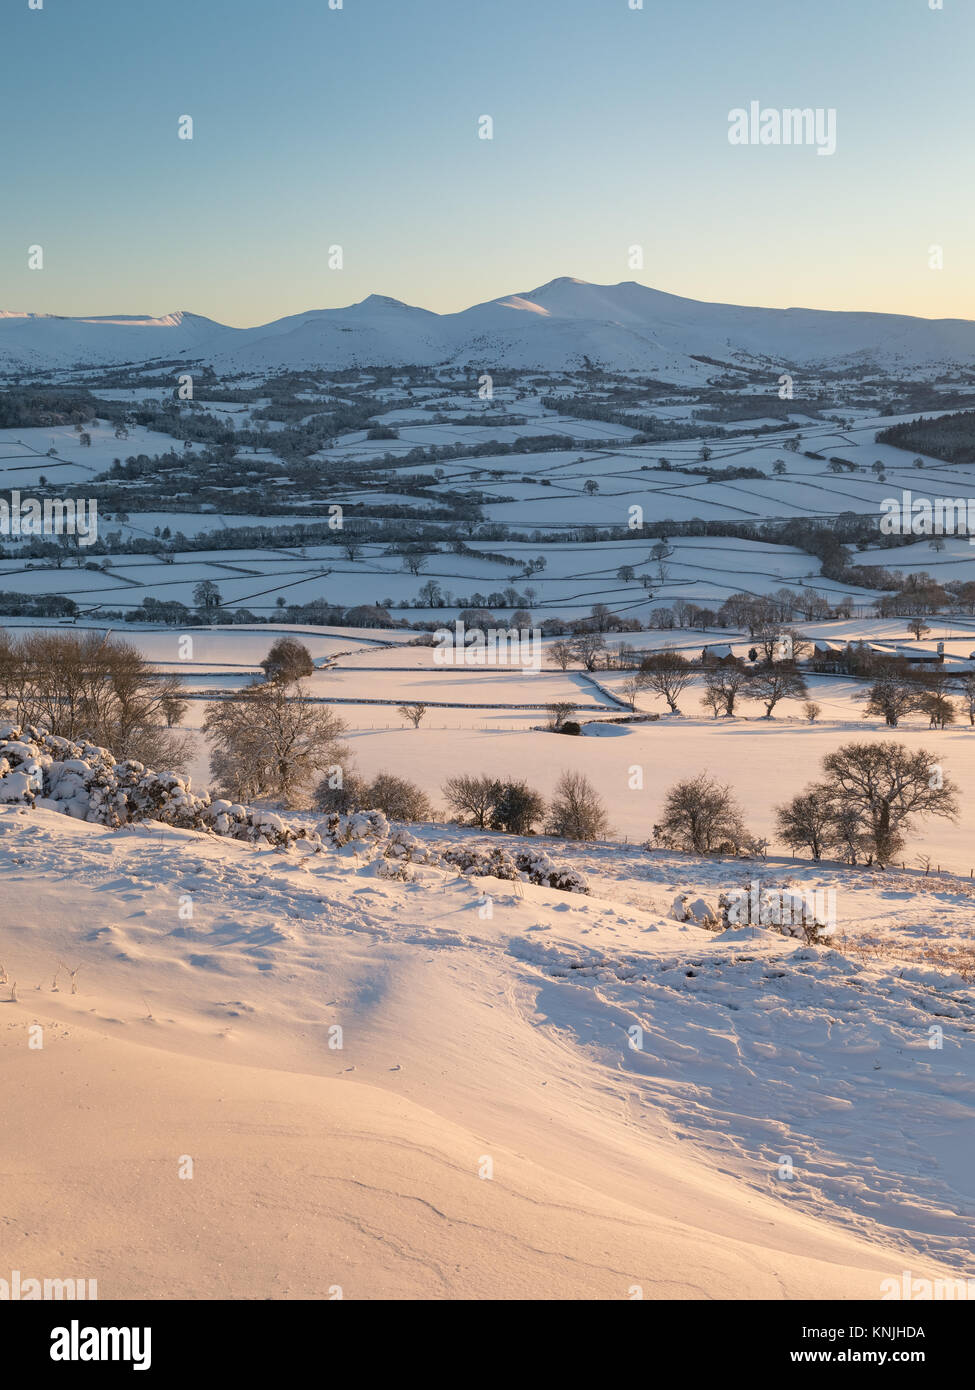 Paxton's Tower. Regno Unito. 11 dicembre, 2017. Guardando attraverso una coperta di neve landsape al tramonto, verso Pen y Fan di montagna da Pen y Crug hill fort. Parco Nazionale di Brecon Beacons, Galles. Credito: Drew Buckley/Alamy Live News Foto Stock